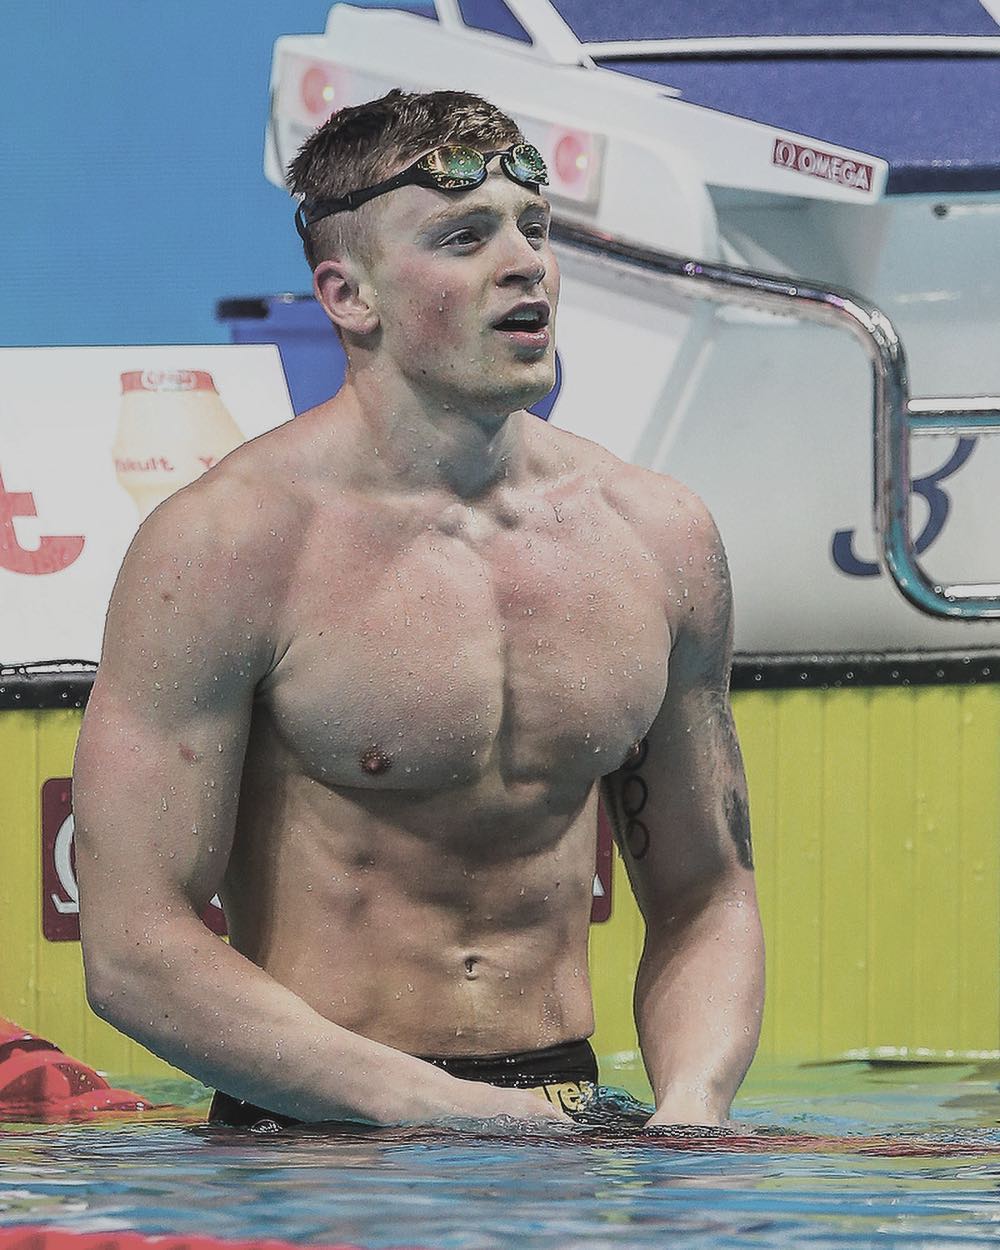 歴代水泳選手の筋肉 ムキムキ体型ランキングtop 画像付き 最新版 Rank1 ランク1 人気ランキングまとめサイト 国内最大級